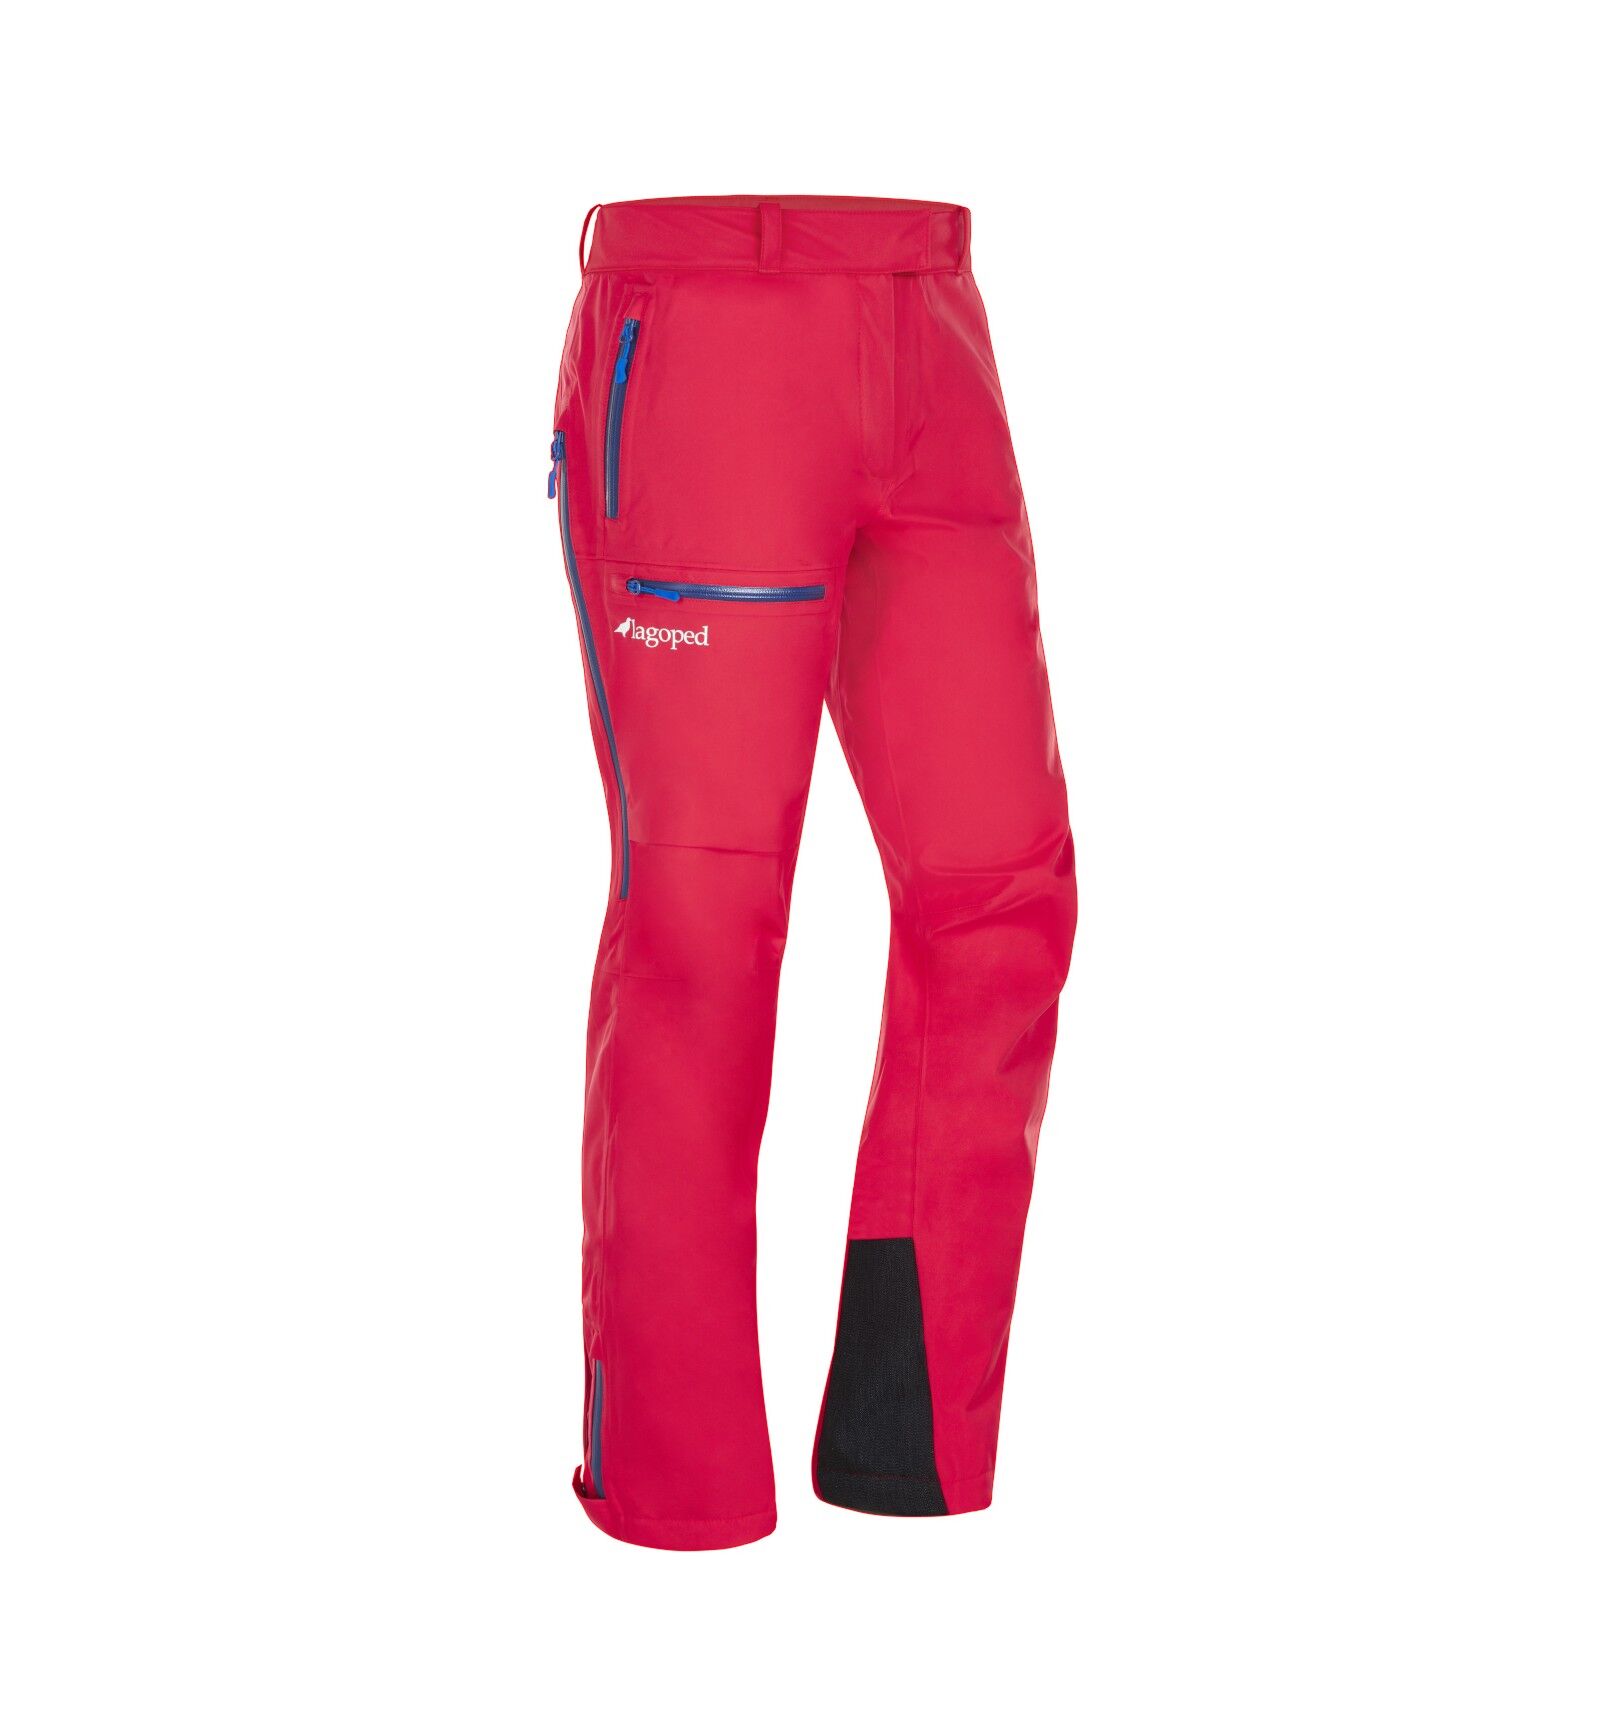 Lagoped Supa2 - Pantaloni impermeabili - Donna